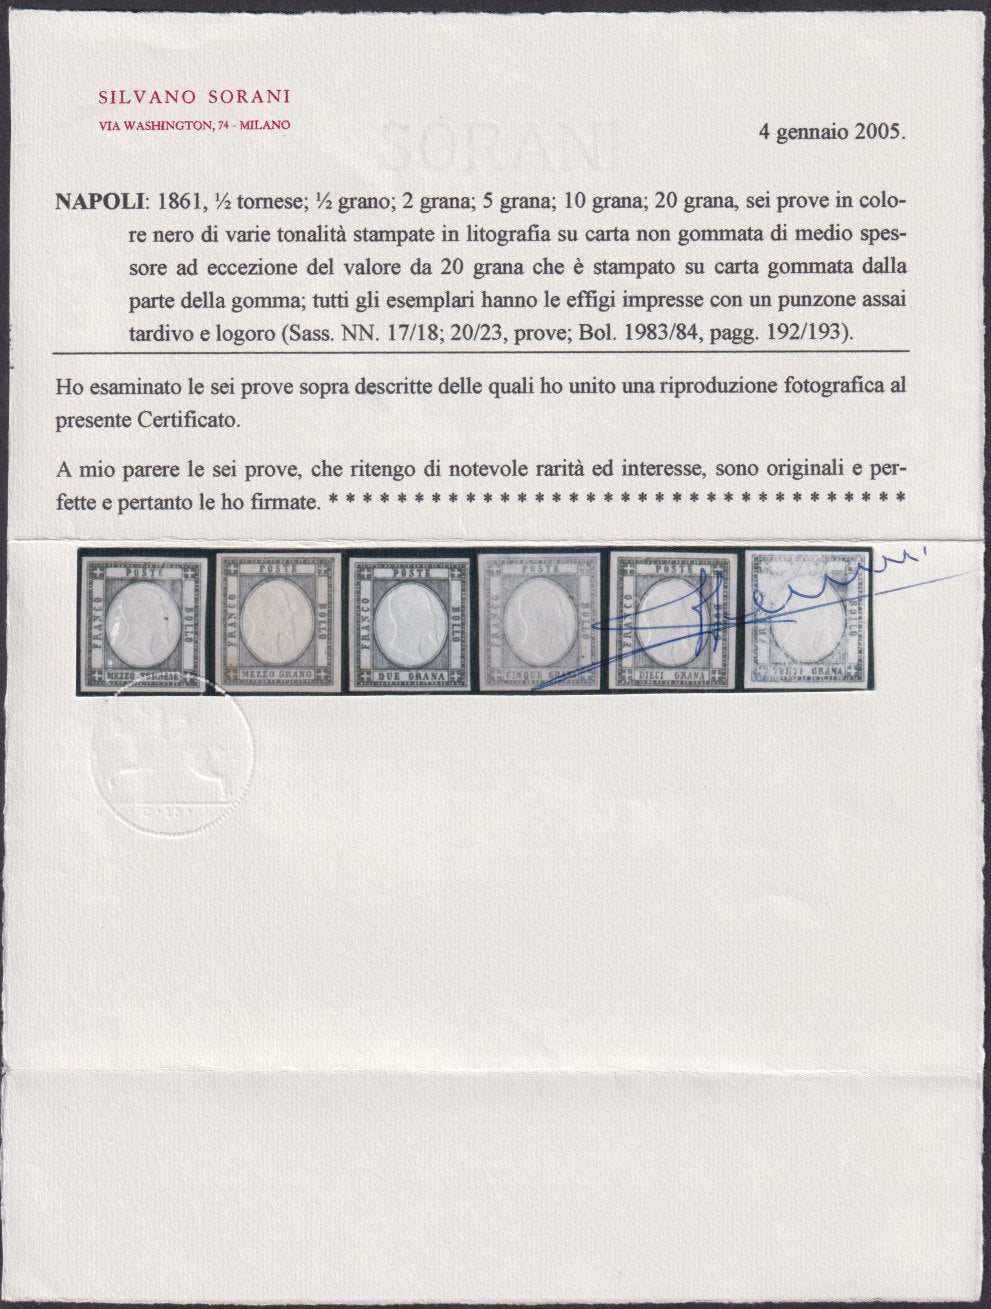 1861 - Prove di colore in varie tonalità di grigio di sei valori facciali (escluso 1 grana e 50 grana) nuovi non gommati e con il 20 grana gommato dalla parte del recto (17/18, 20/23). Certificato Sorani.